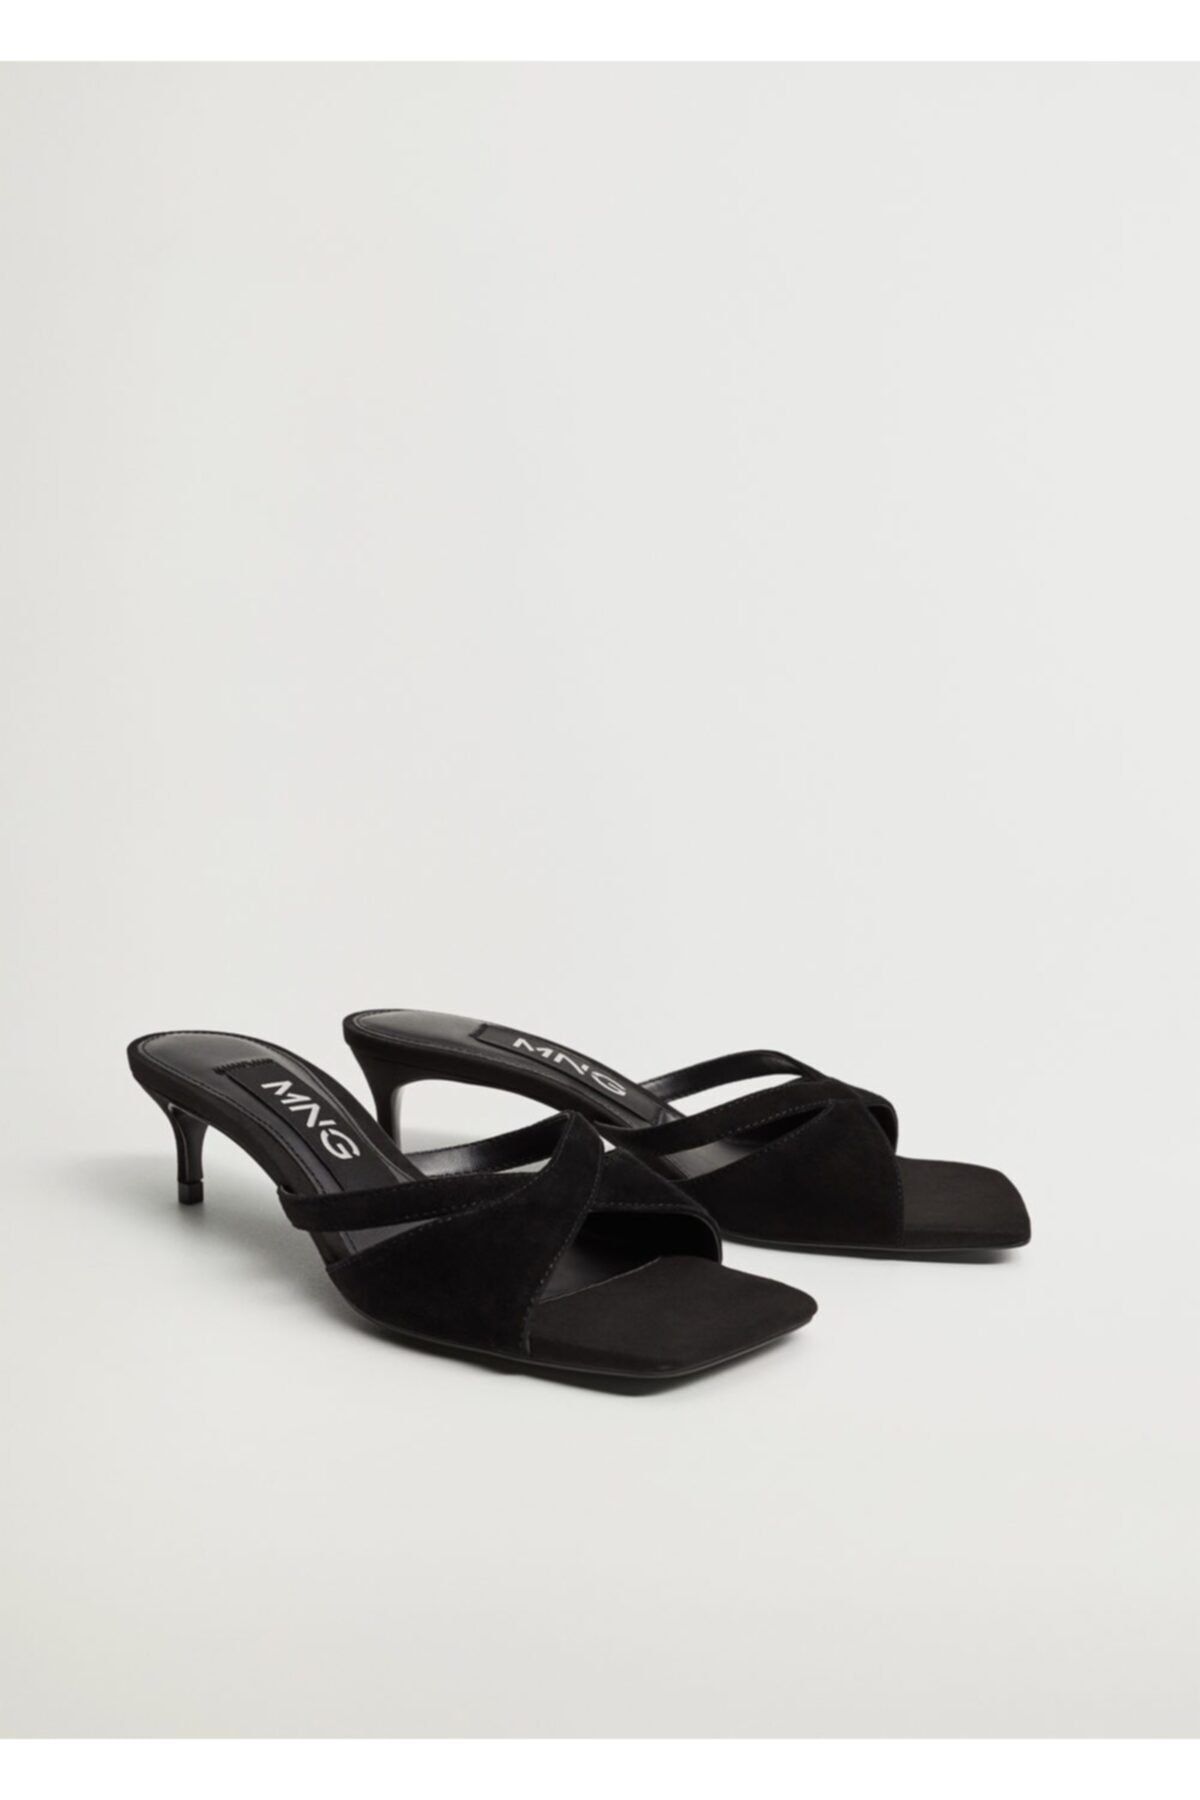 MANGO Kadın Siyah Bantlı Deri Topuklu Sandalet